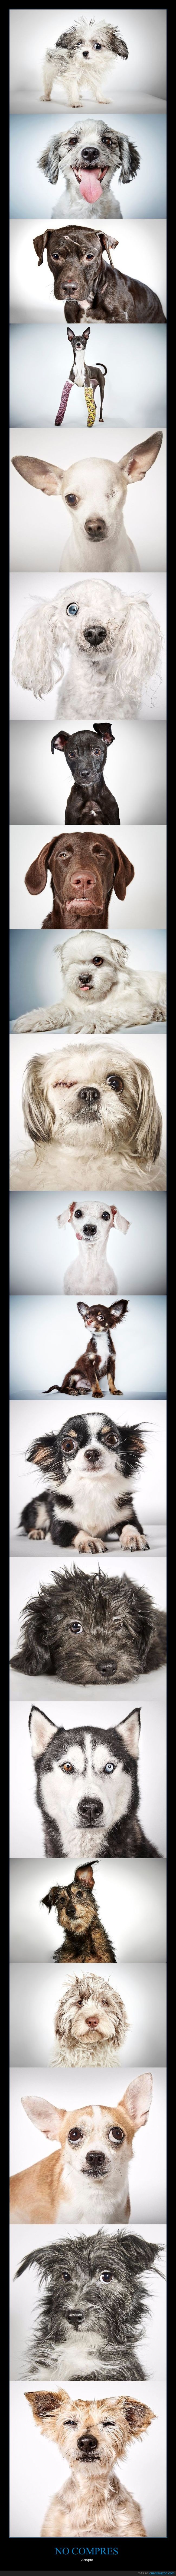 adoptar,perros,fotografía,richard phibbs